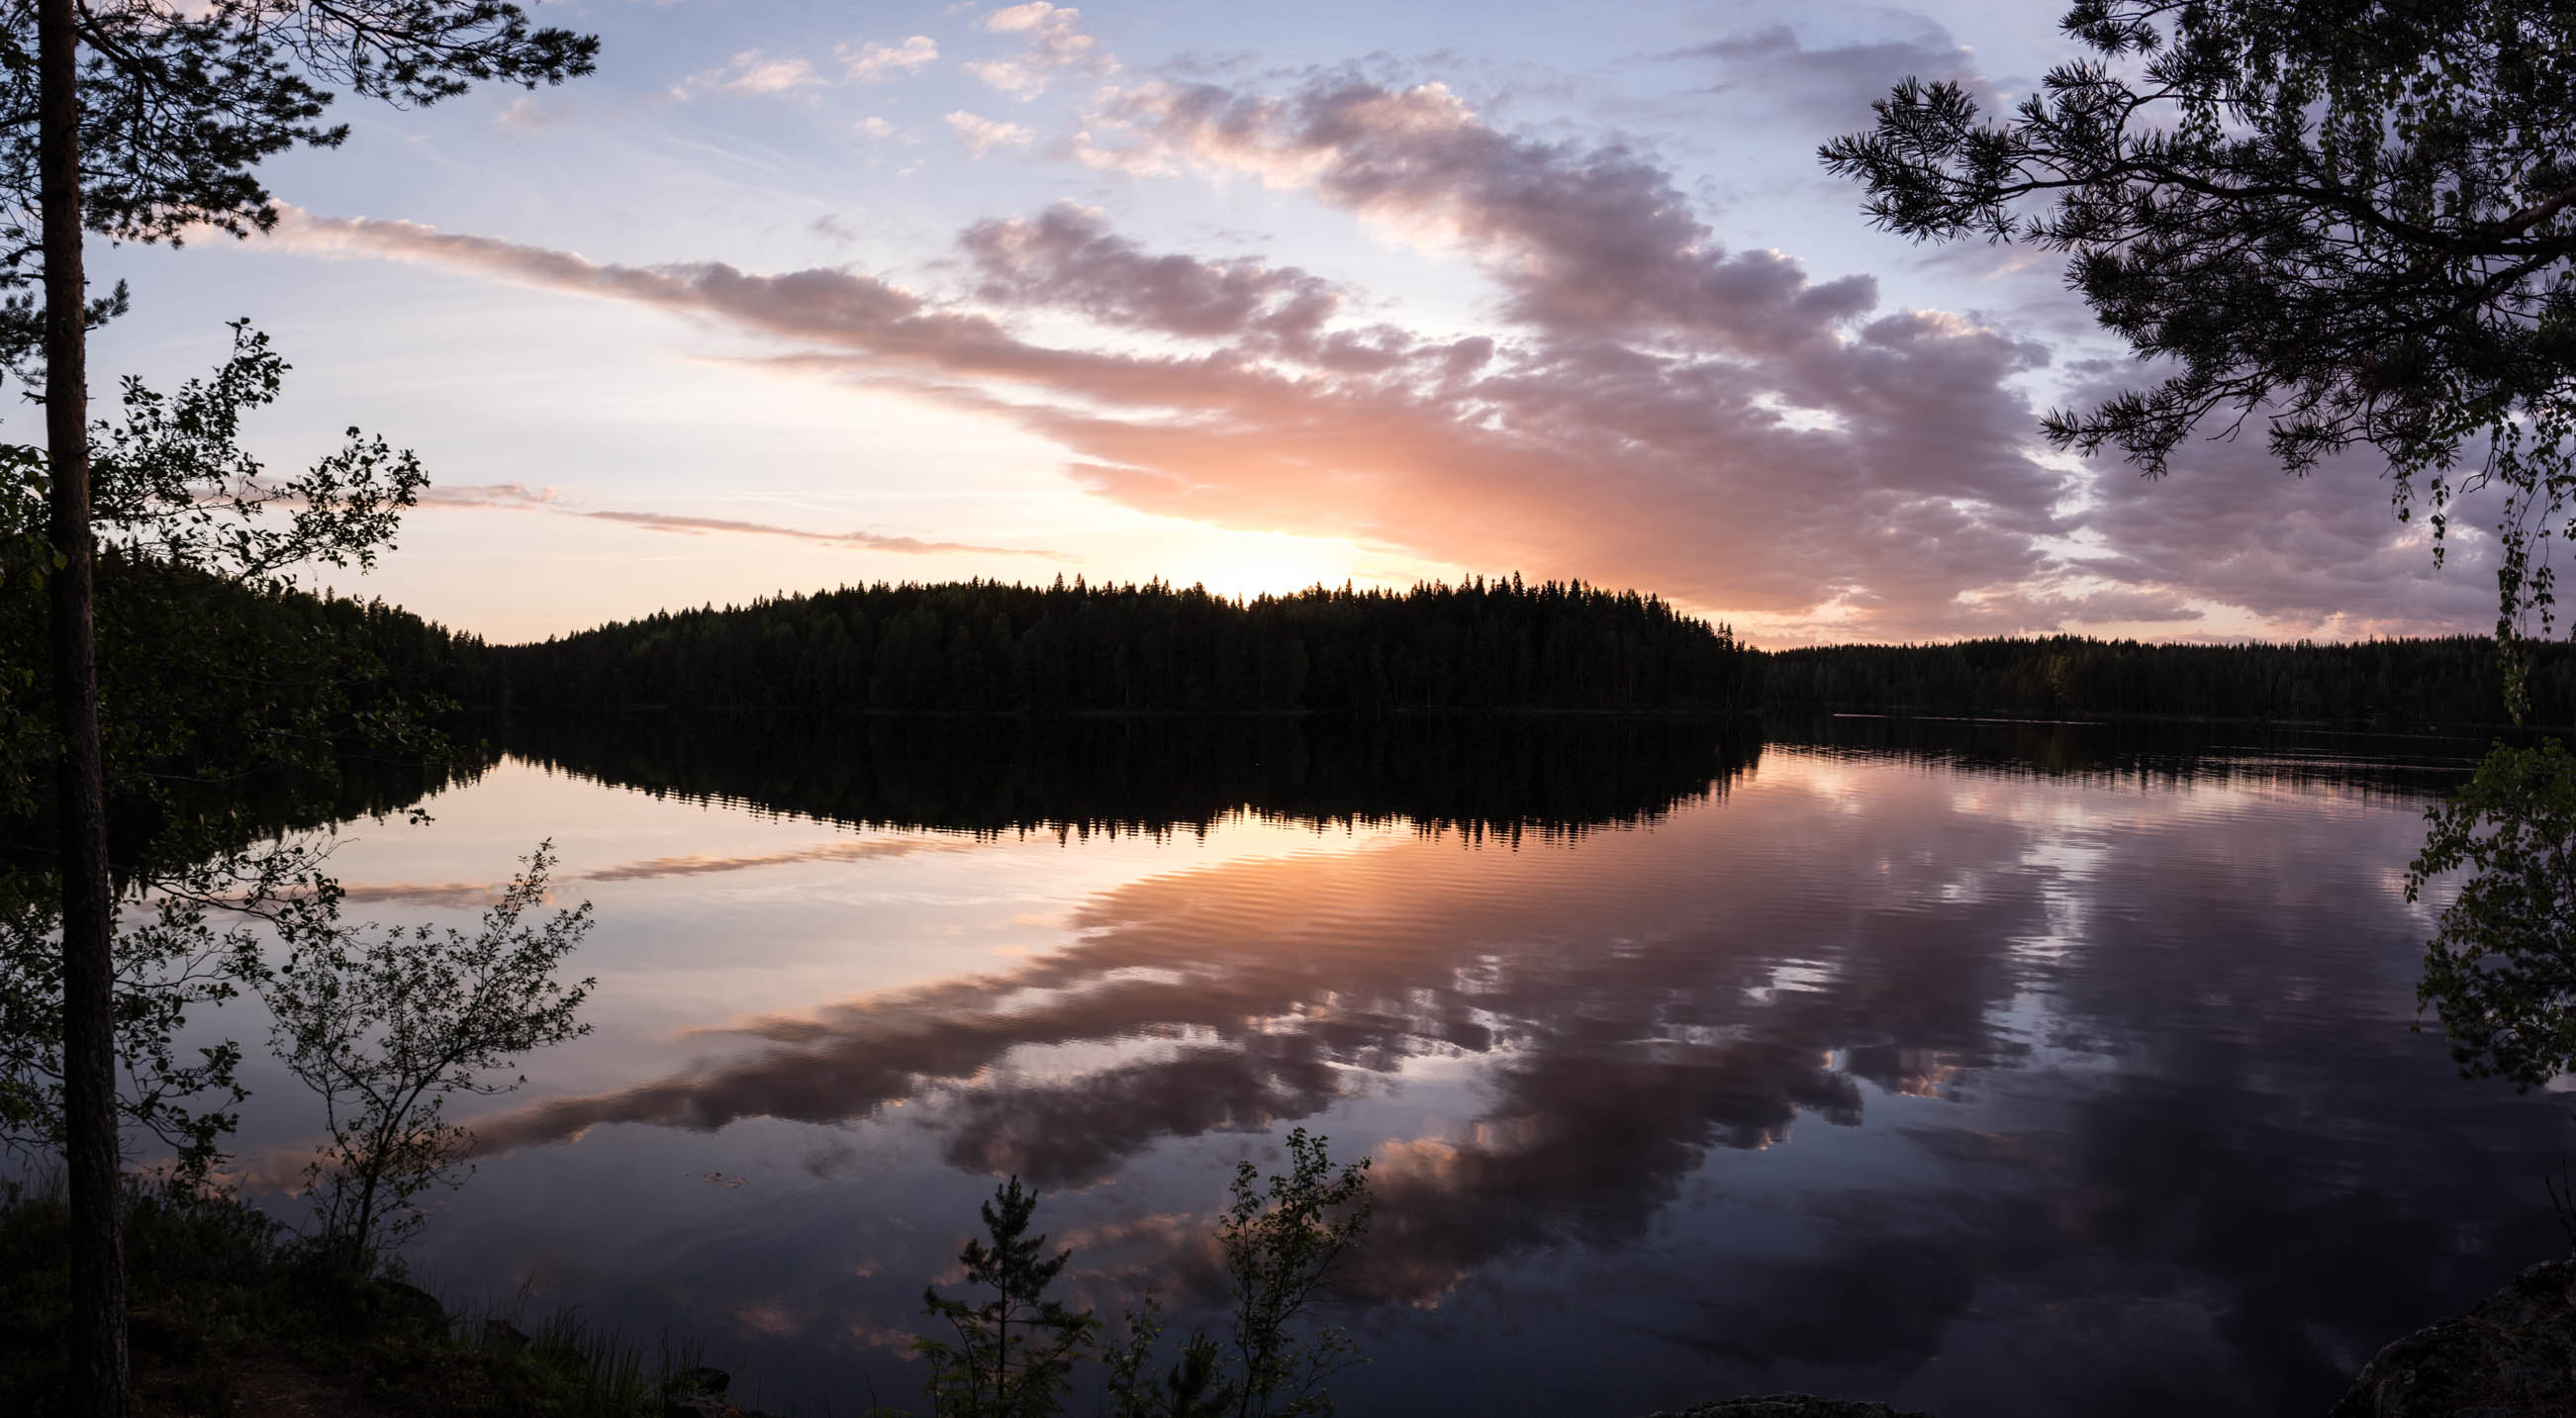 Helvetinjärven kansallispuisto